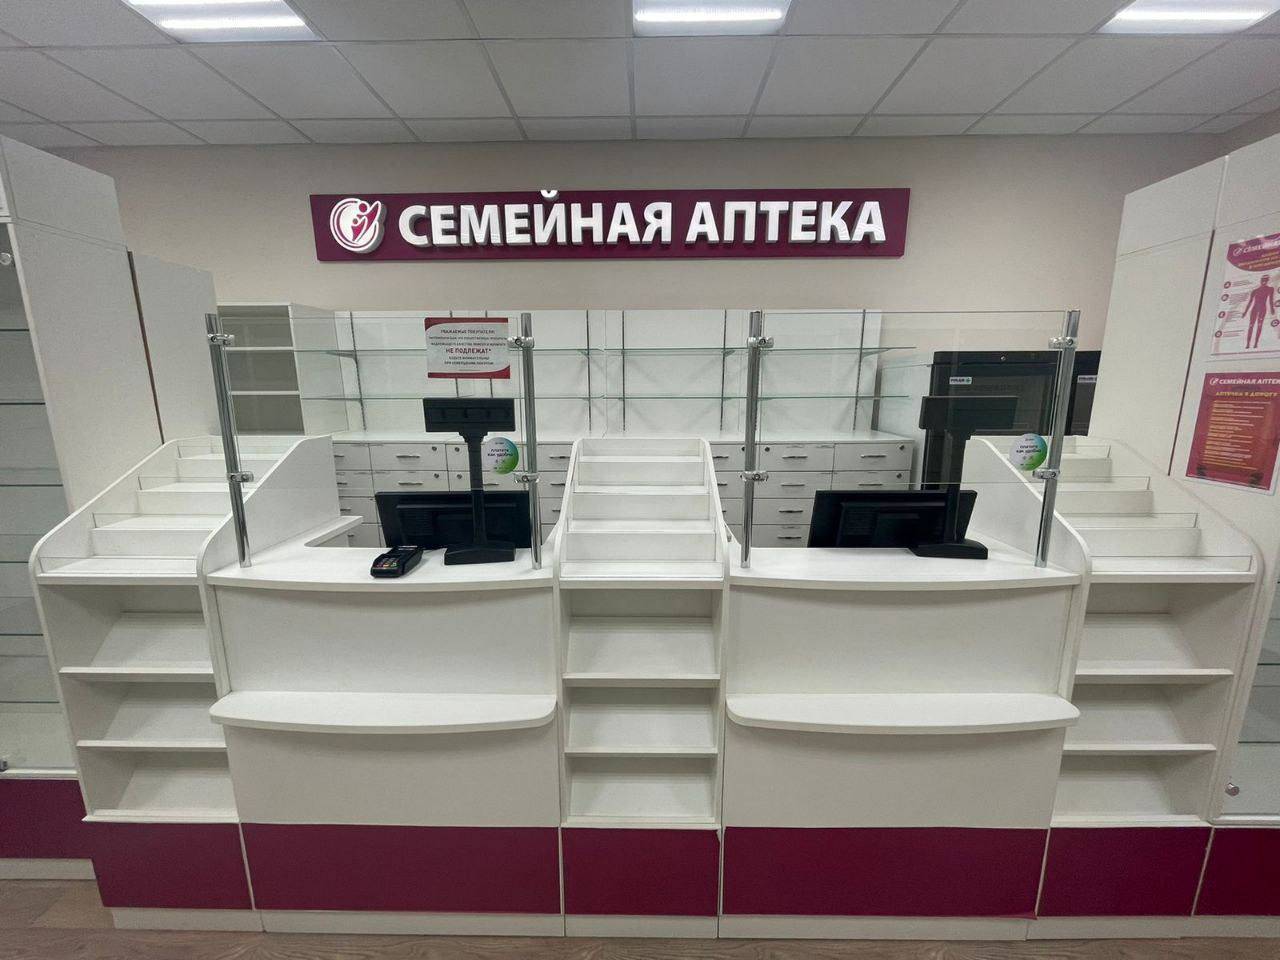 Документы на получение лицензии для аптеки в гарнизоне «Остафьево» городского округа Щербинка отправлены на обработку